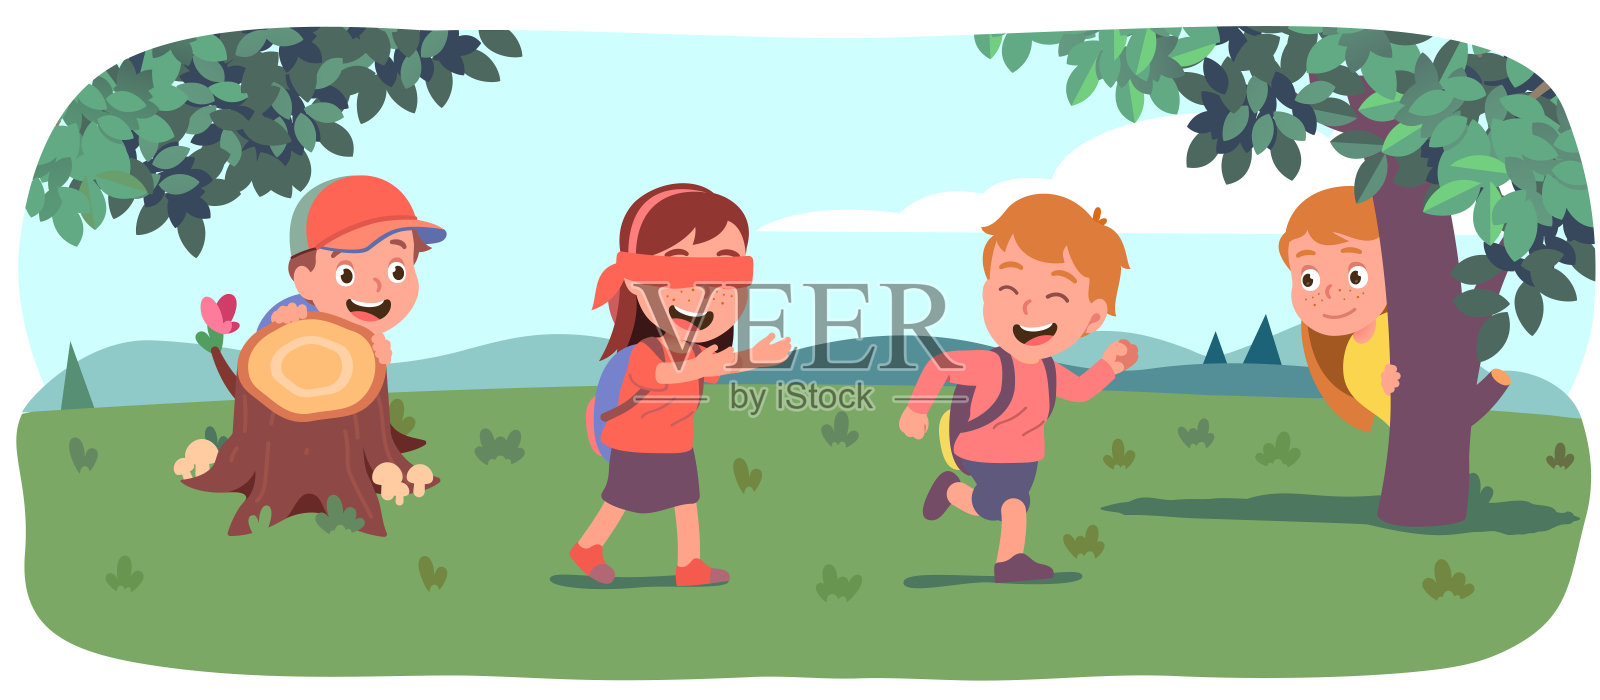 男孩，女孩，孩子们在绿色的夏日草坪上捉迷藏。被蒙住眼睛的女孩在树桩后面寻找朋友。快乐的孩子们享受户外游戏活动。平面向量插图插画图片素材